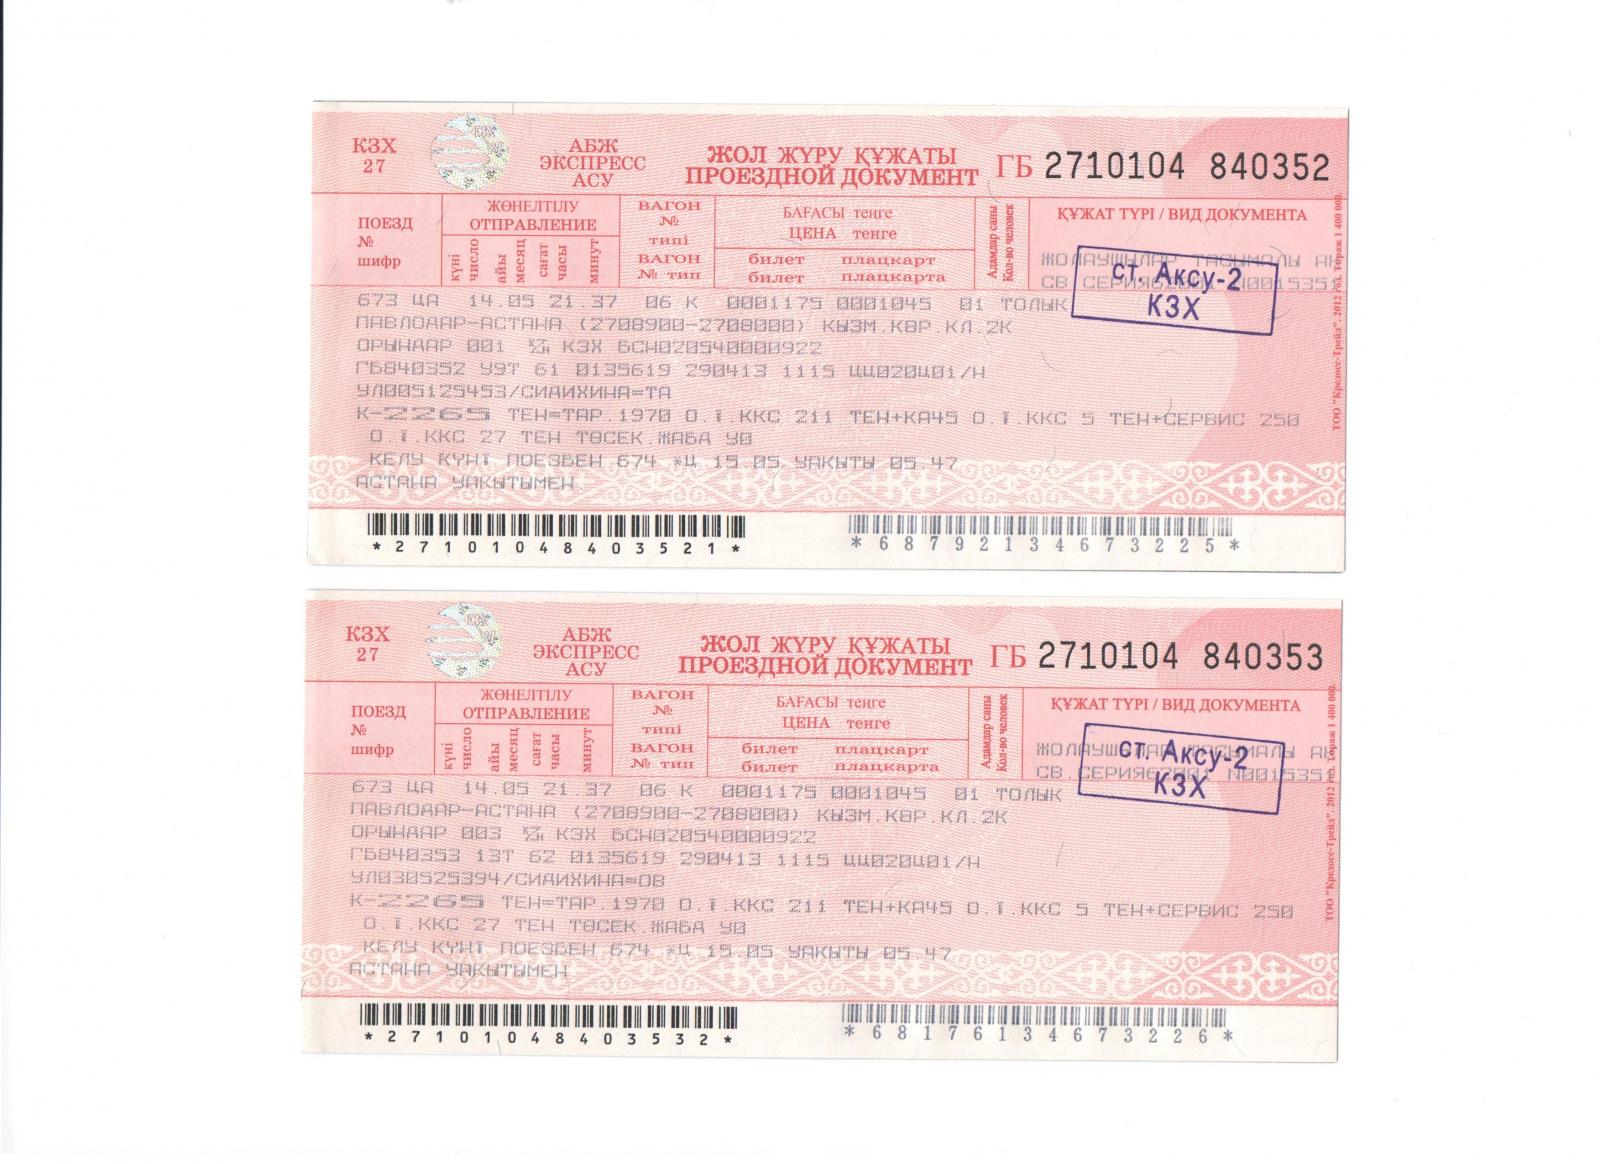 ЖД билеты. Билет на поезд Казахстан. Железнодорожный билет билет. ЖД билеты Казахстан. Жд билеты алматы астана